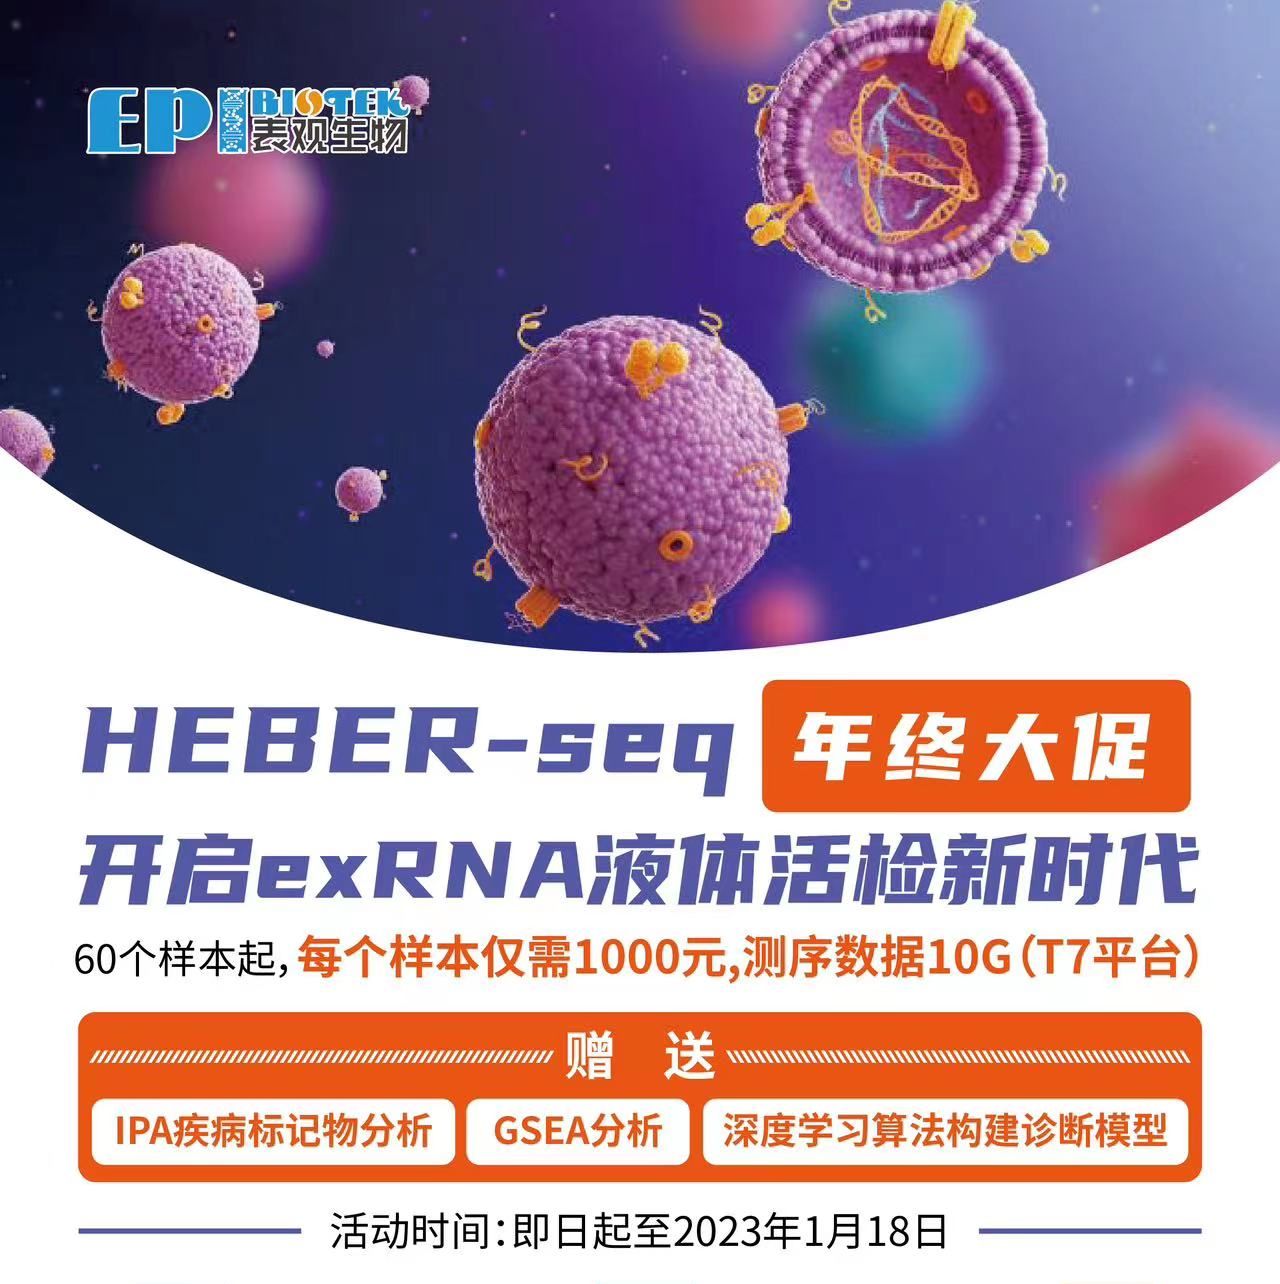 年终大促！HEBER-seq千元低价！开启exRNA液体活检新时代！